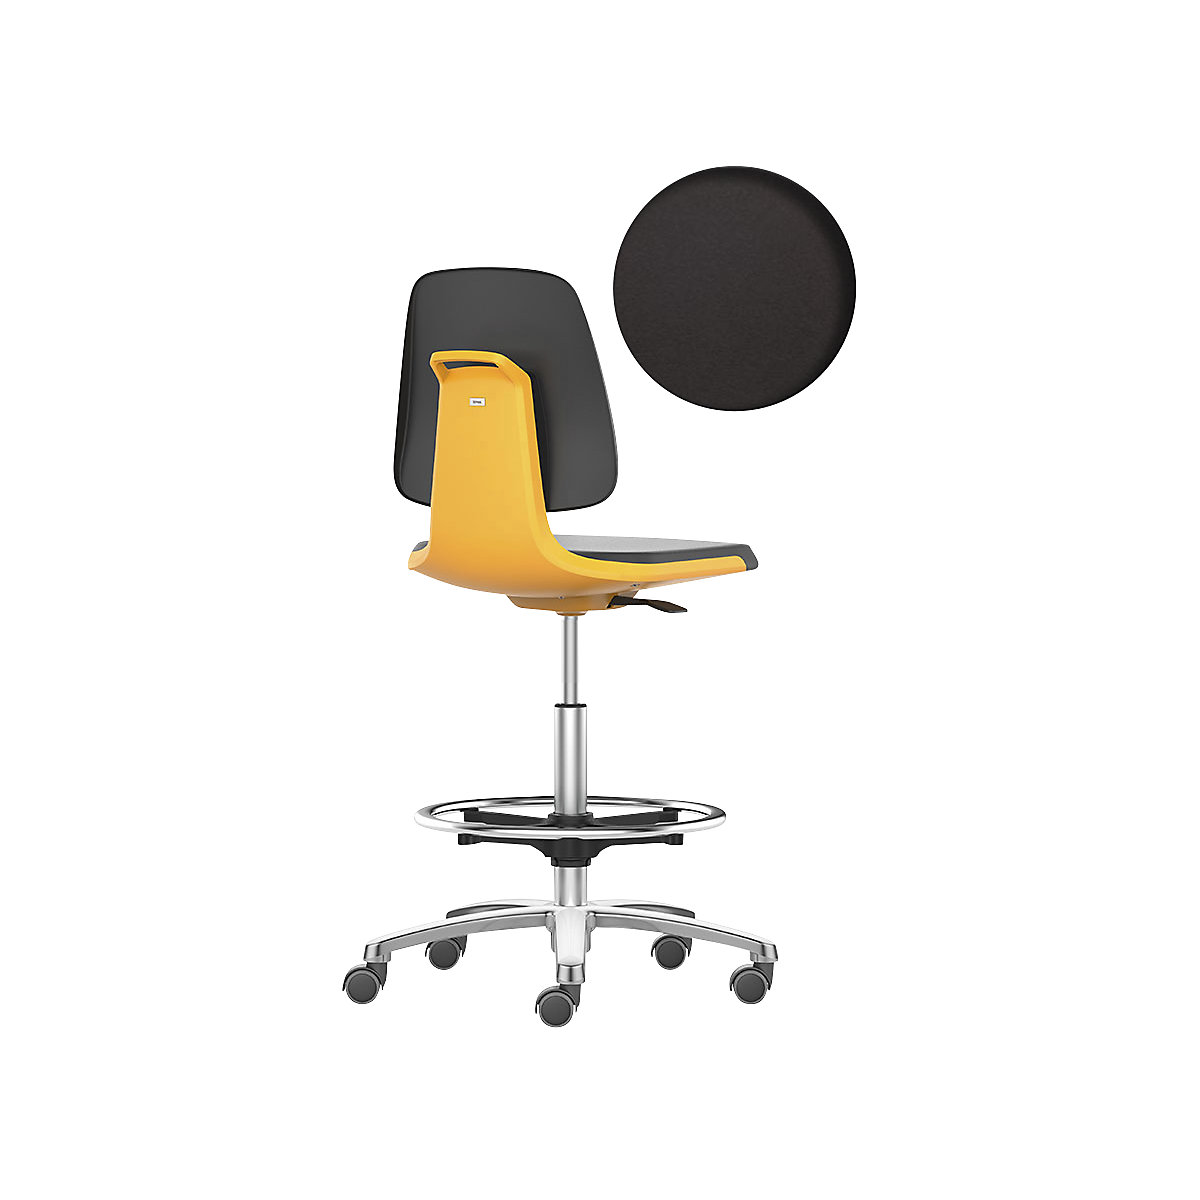 bimos – Siège d'atelier LABSIT, siège haut avec roulettes blocables et repose-pieds circulaire, assise à habillage similicuir, orange